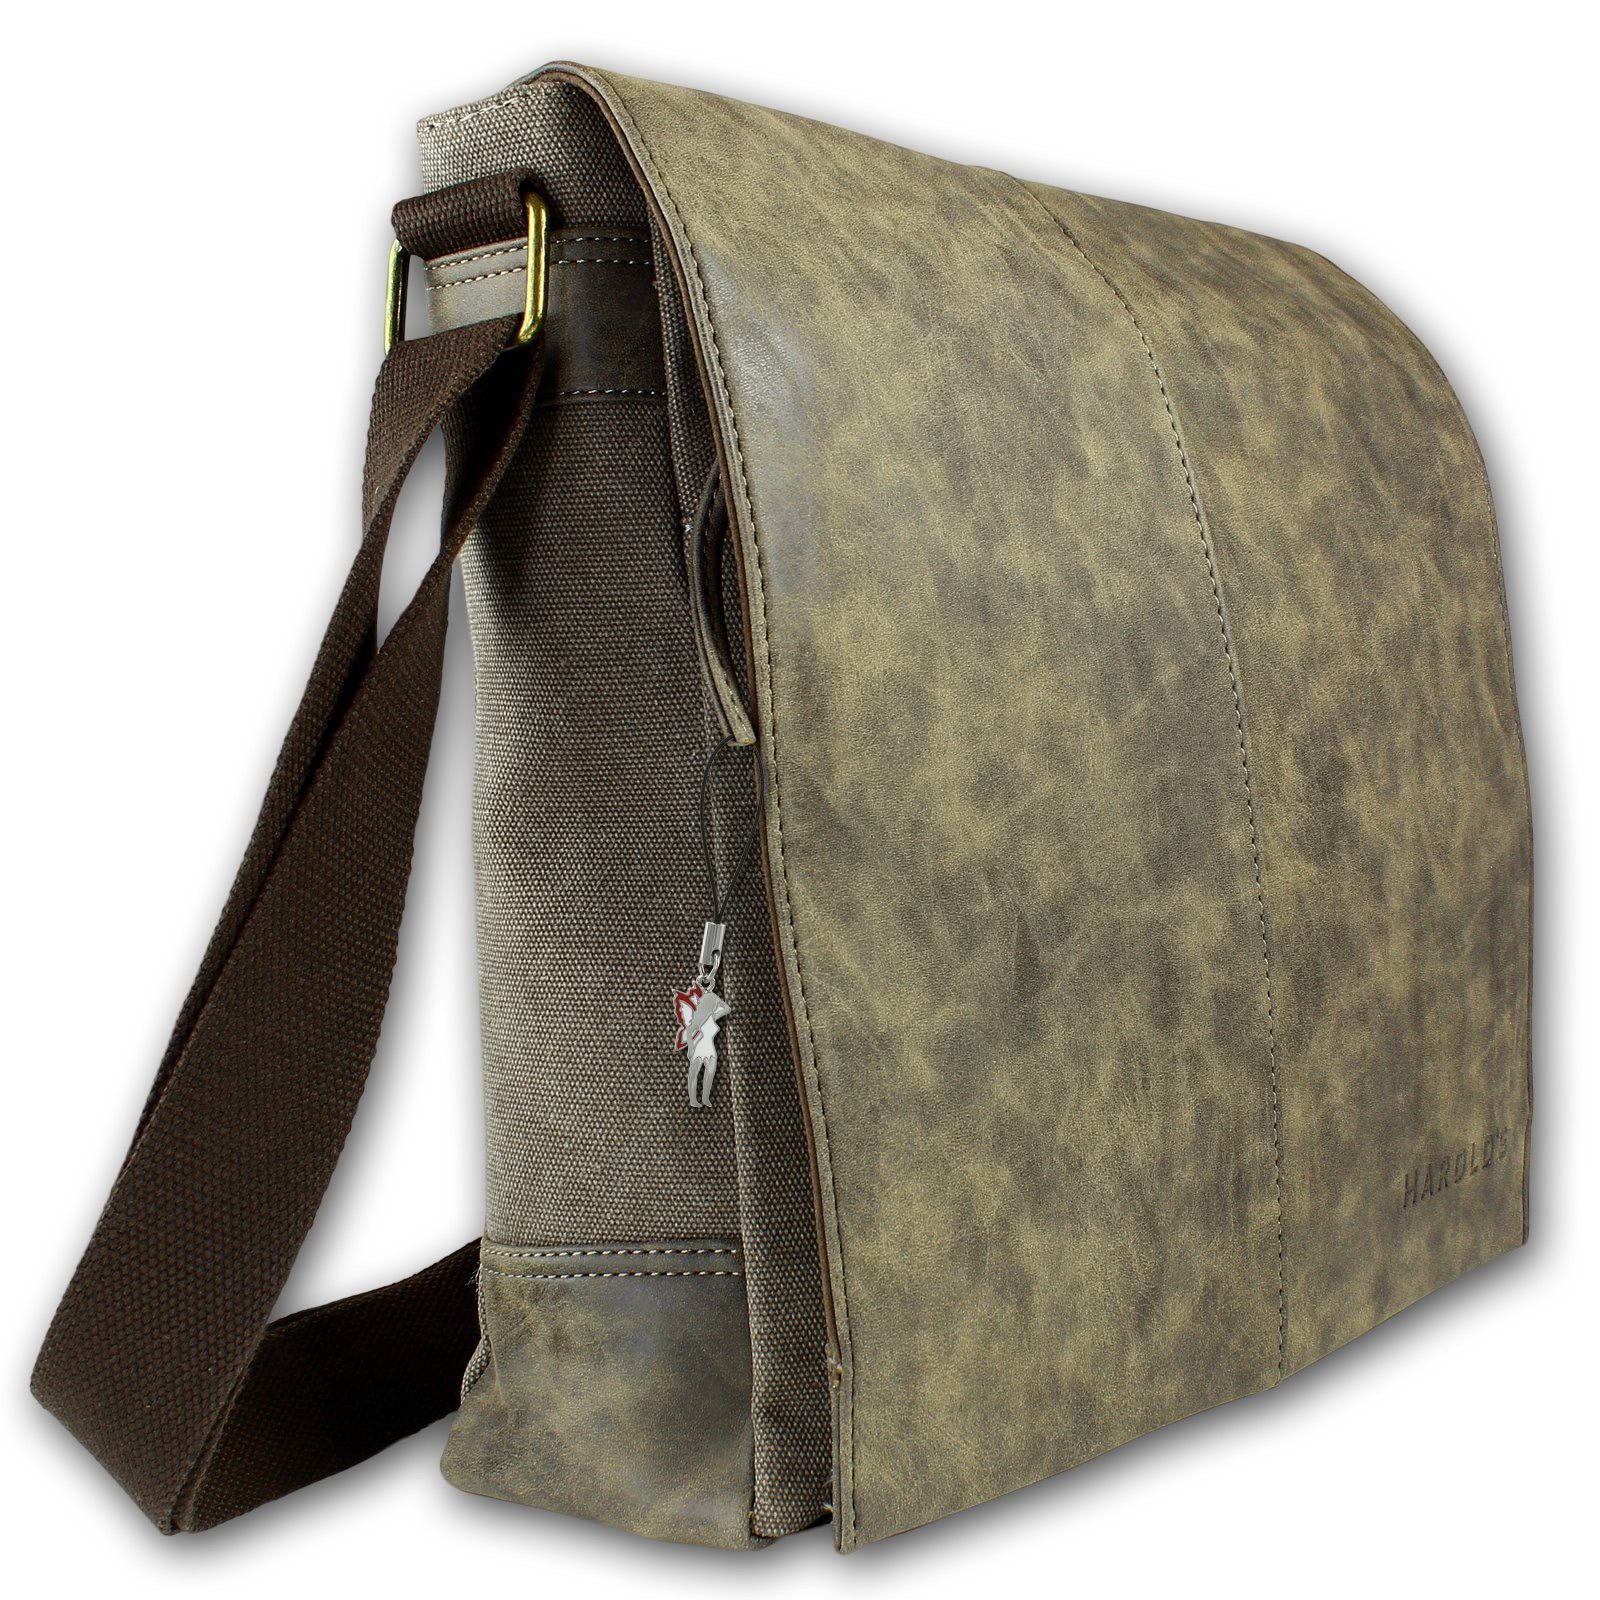 Tasche Herren Harolds 28cm Bag ca. (Messenger Messenger Herren, Jugend Bag), braun, Breite Schultertasche braun in Harold's